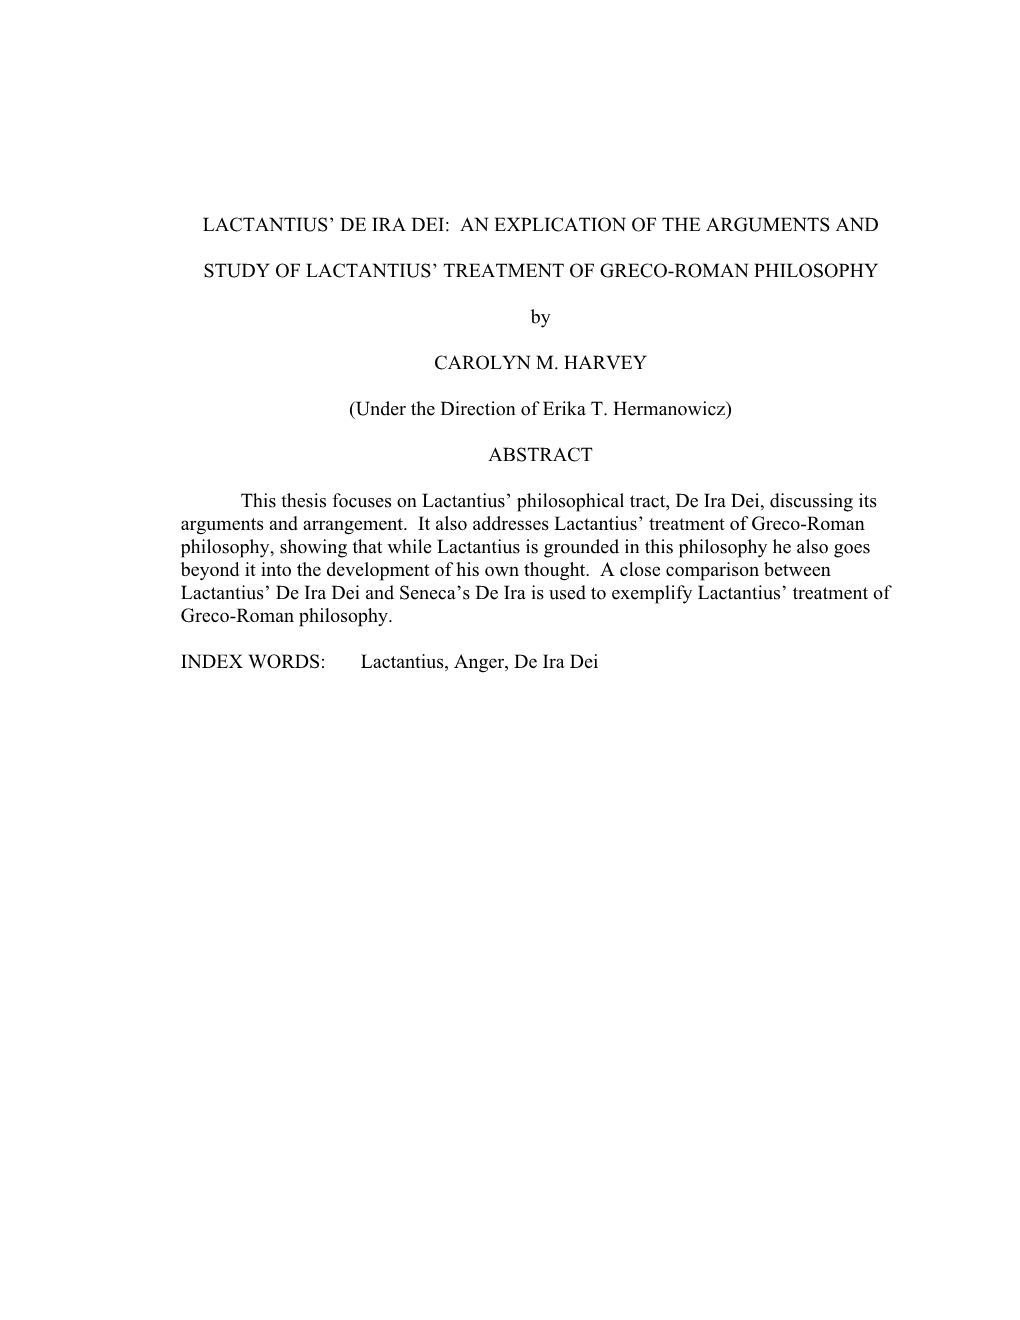 Lactantius' De Ira Dei: an Explication of the Arguments